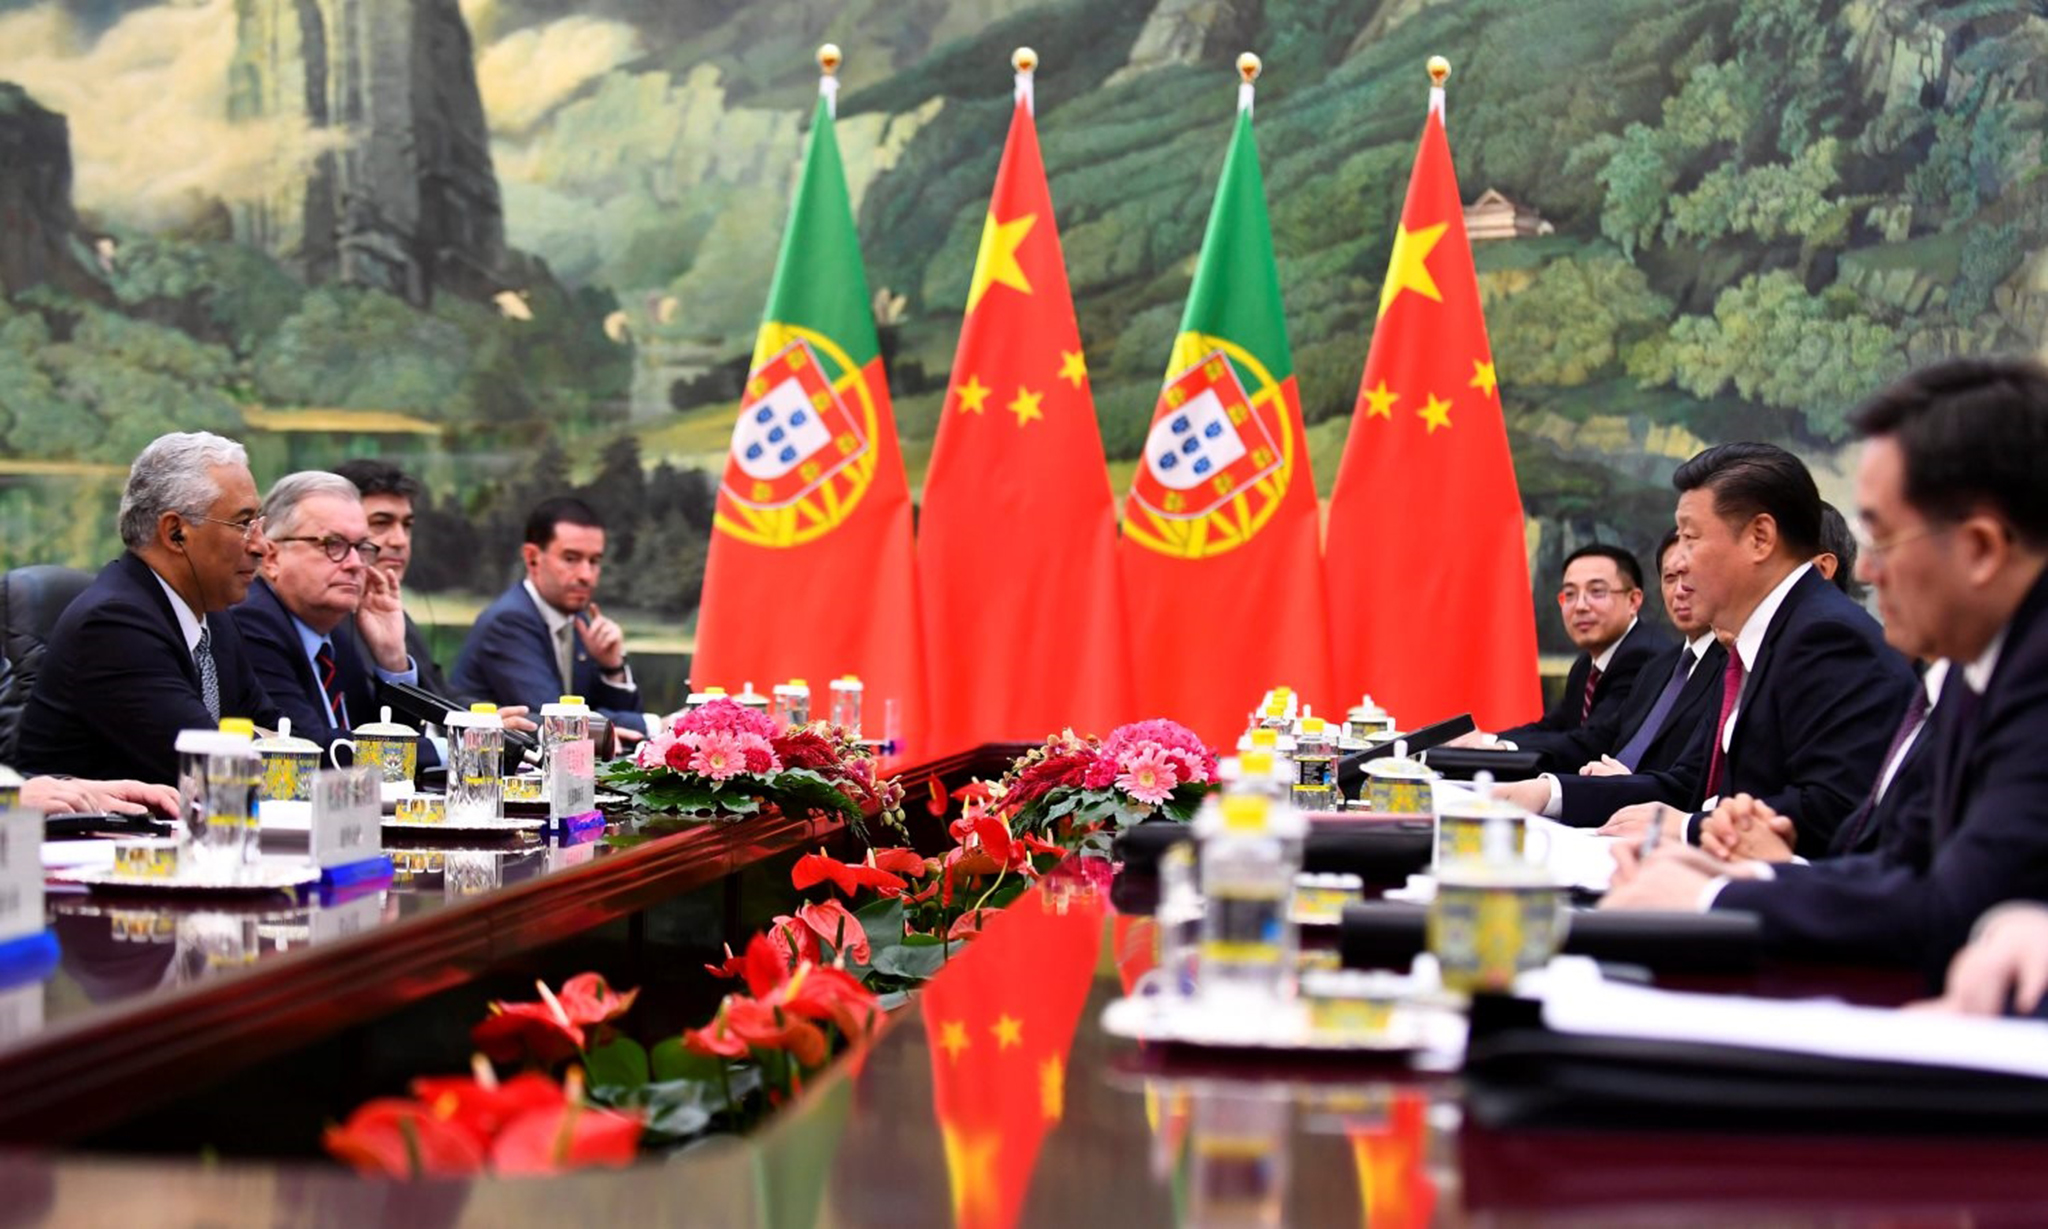 Relações China-Portugal | Tese conclui que Portugal não tem estratégia definida